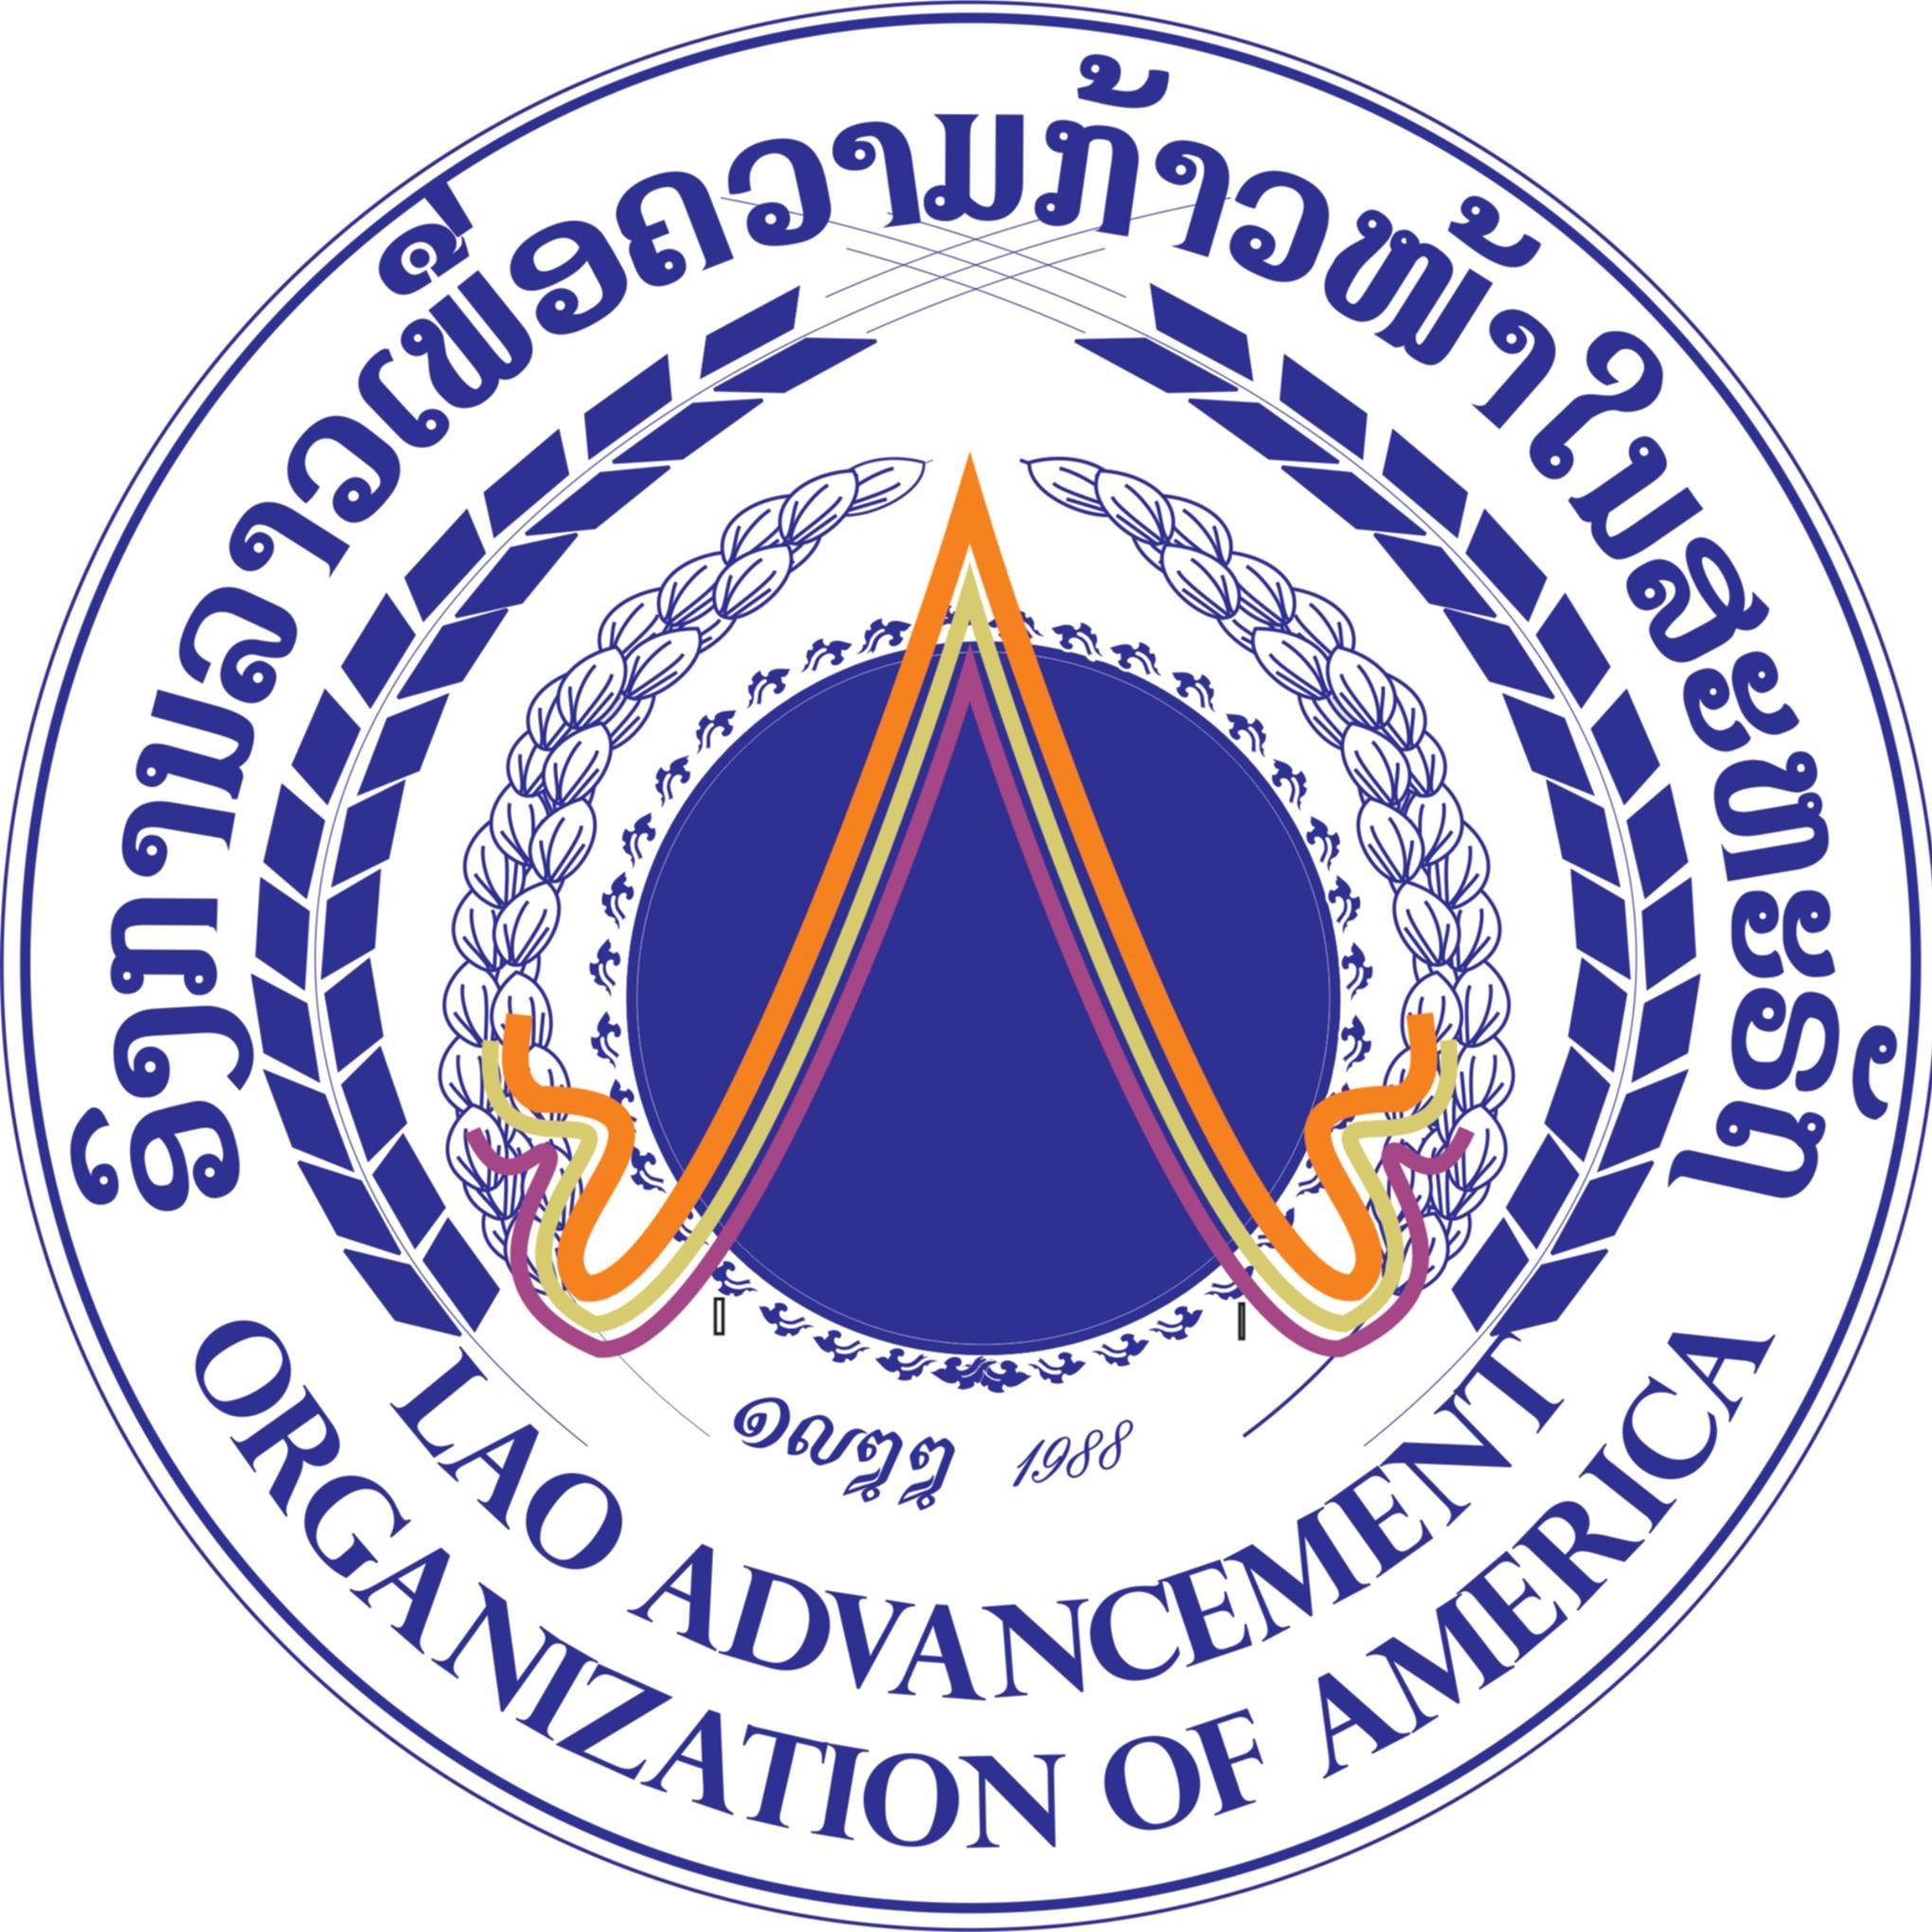 Lao Advancement Organization of America (LAOA)